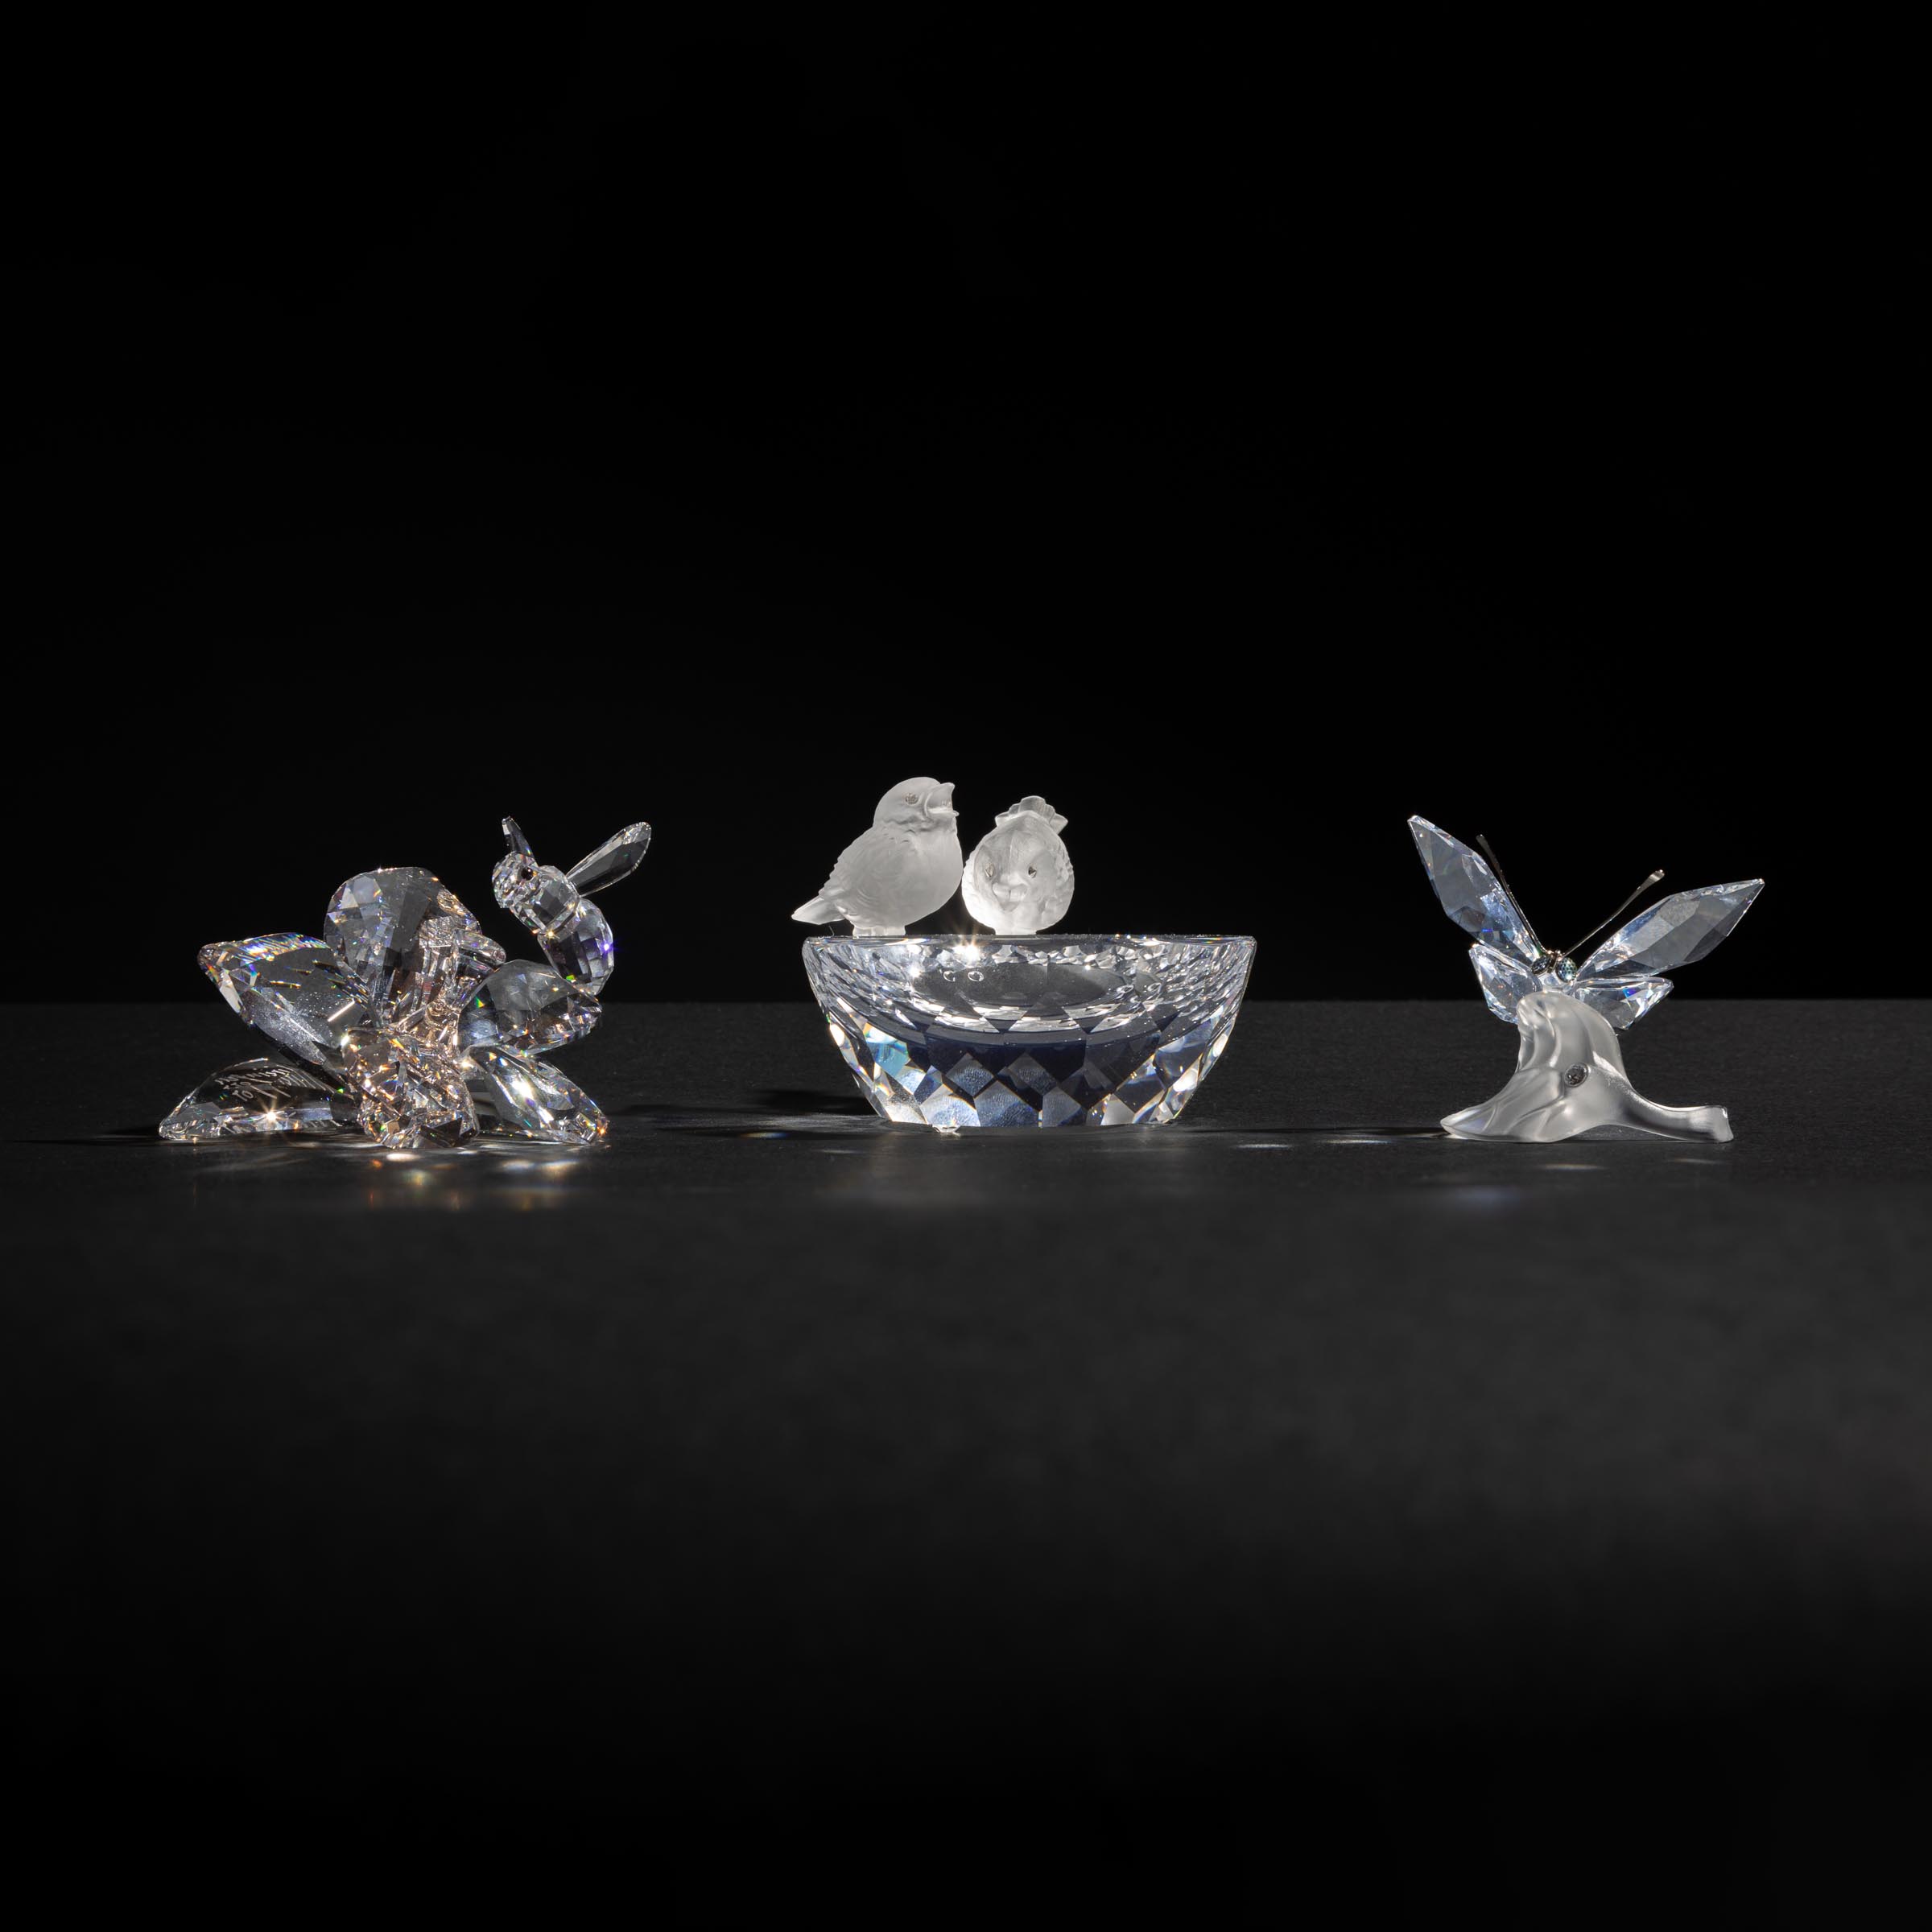 Three Swarovski Crystal Figurines 2fb0755